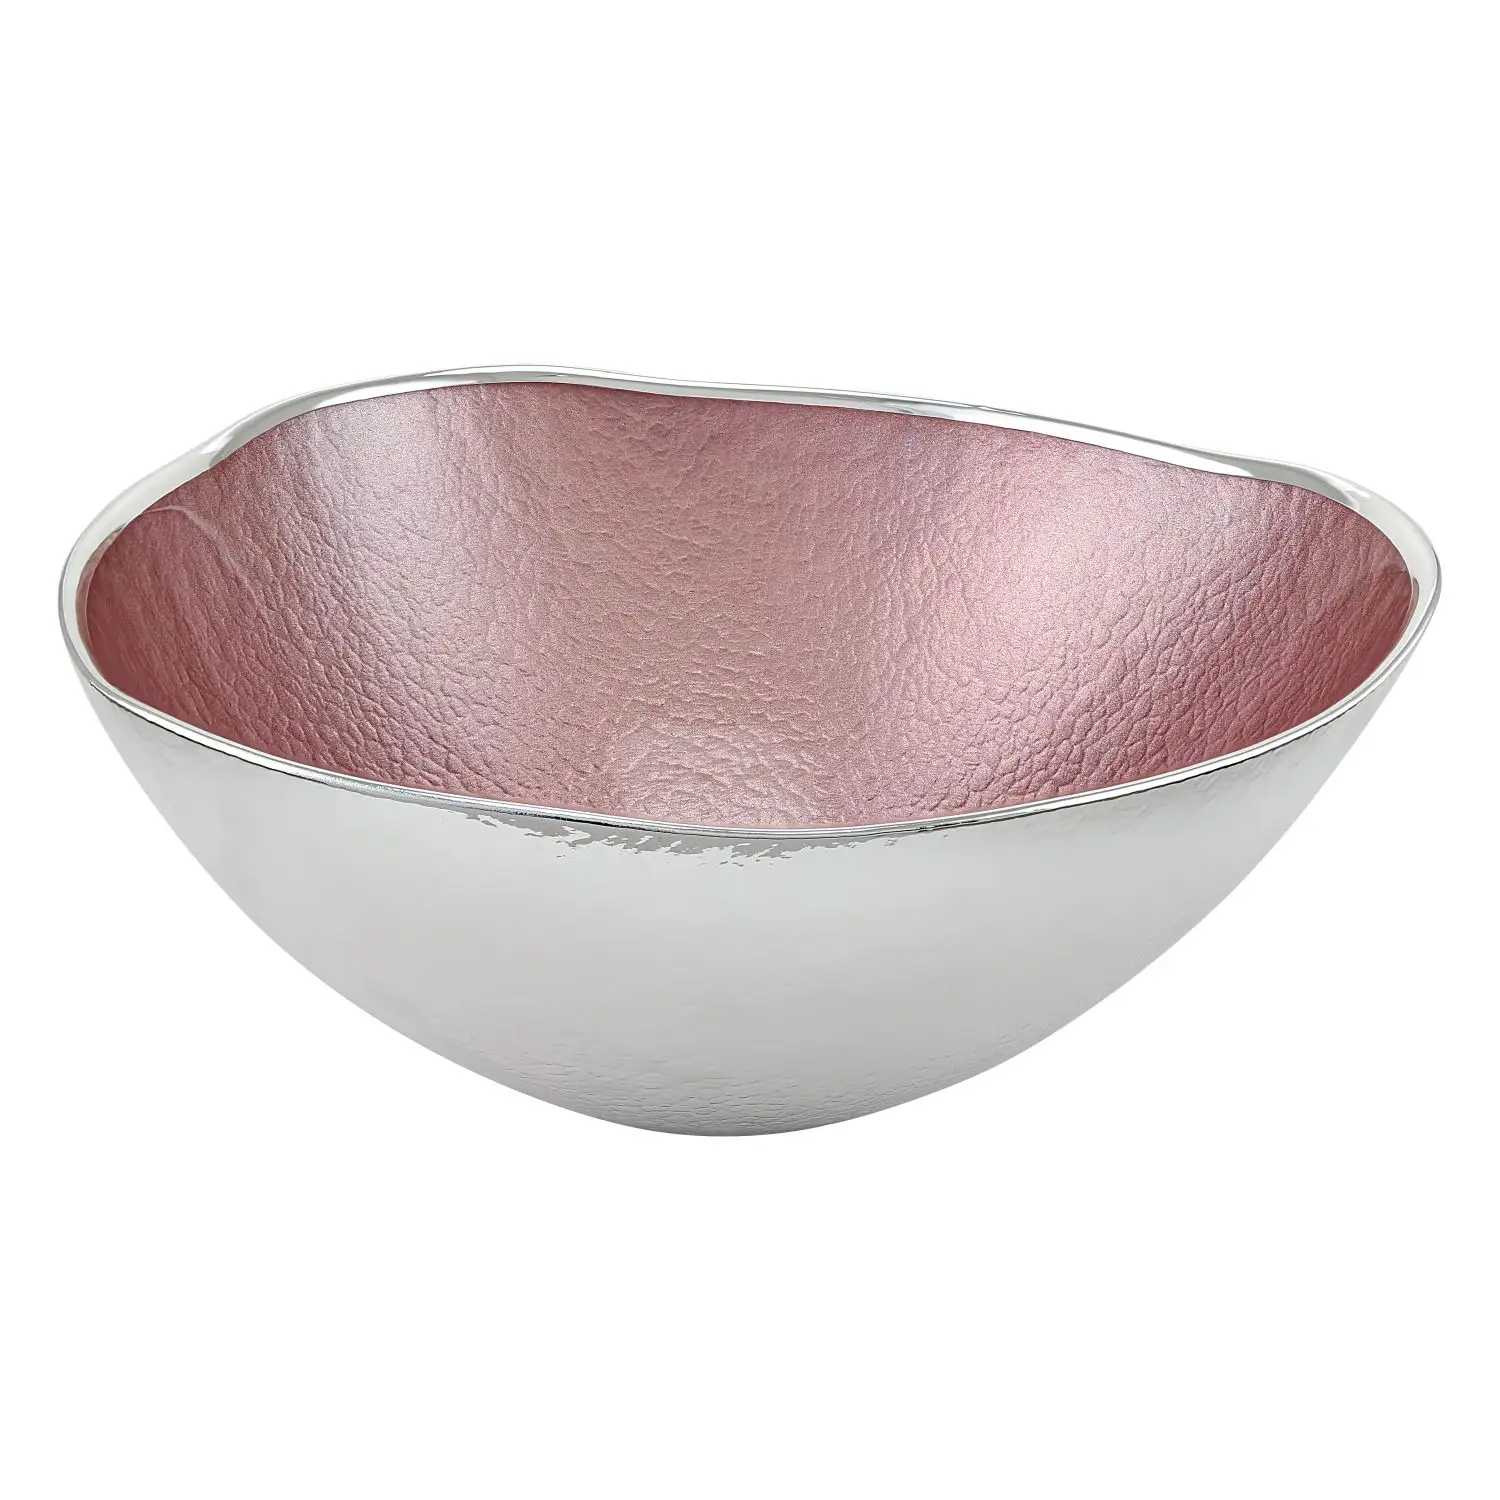 Чаша стеклянная UP (цвет бледно-розовый) диаметр 24 см, высота 10,5 см